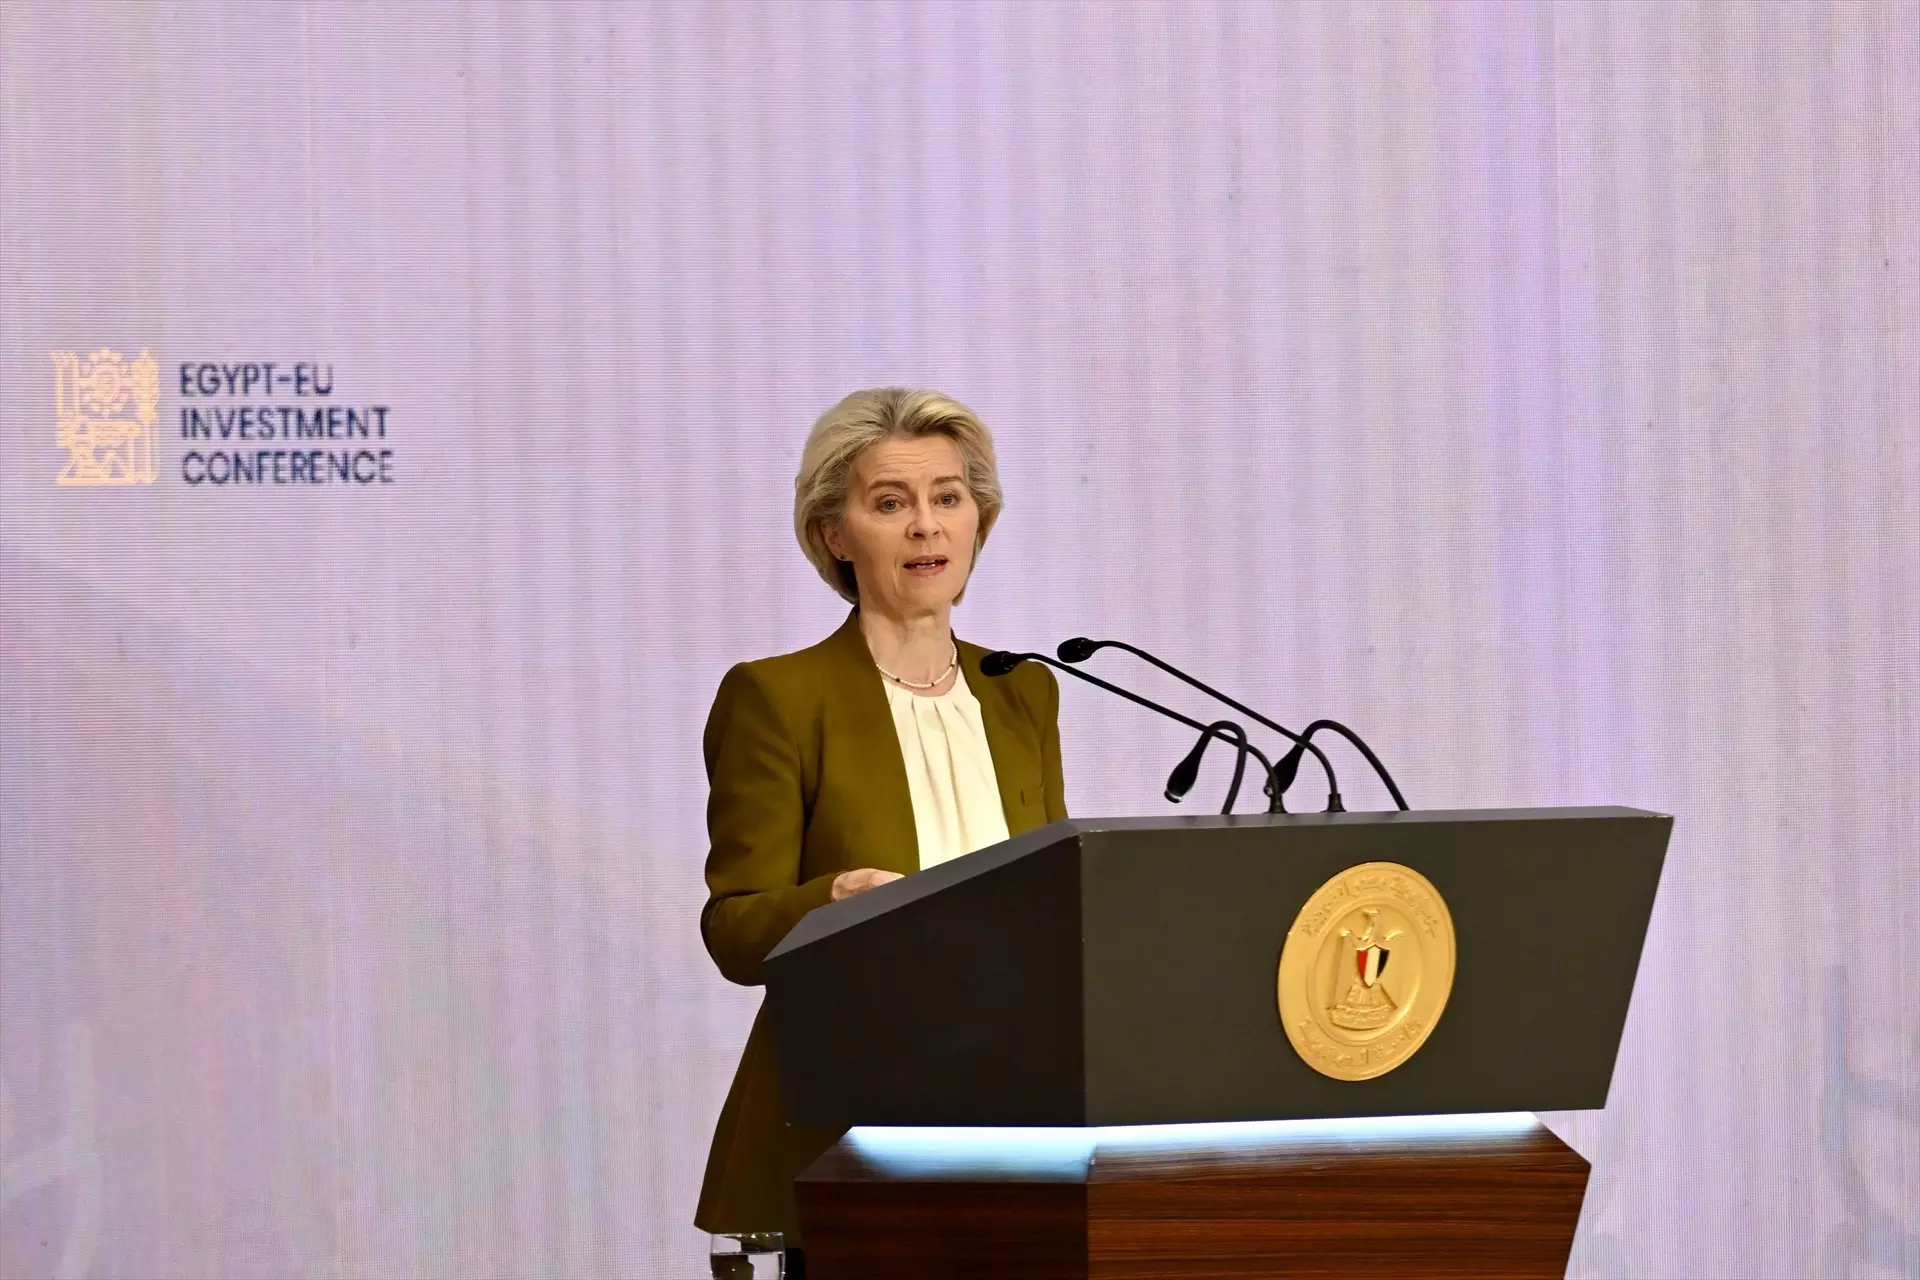 La Presidenta de la Comisión Europea, Ursula von der Leyen, interviene durante la Conferencia de Inversión Egipto-UE. Imagen de archivo. — Dati Bendo / European Commission / d / DPA / Europa Press